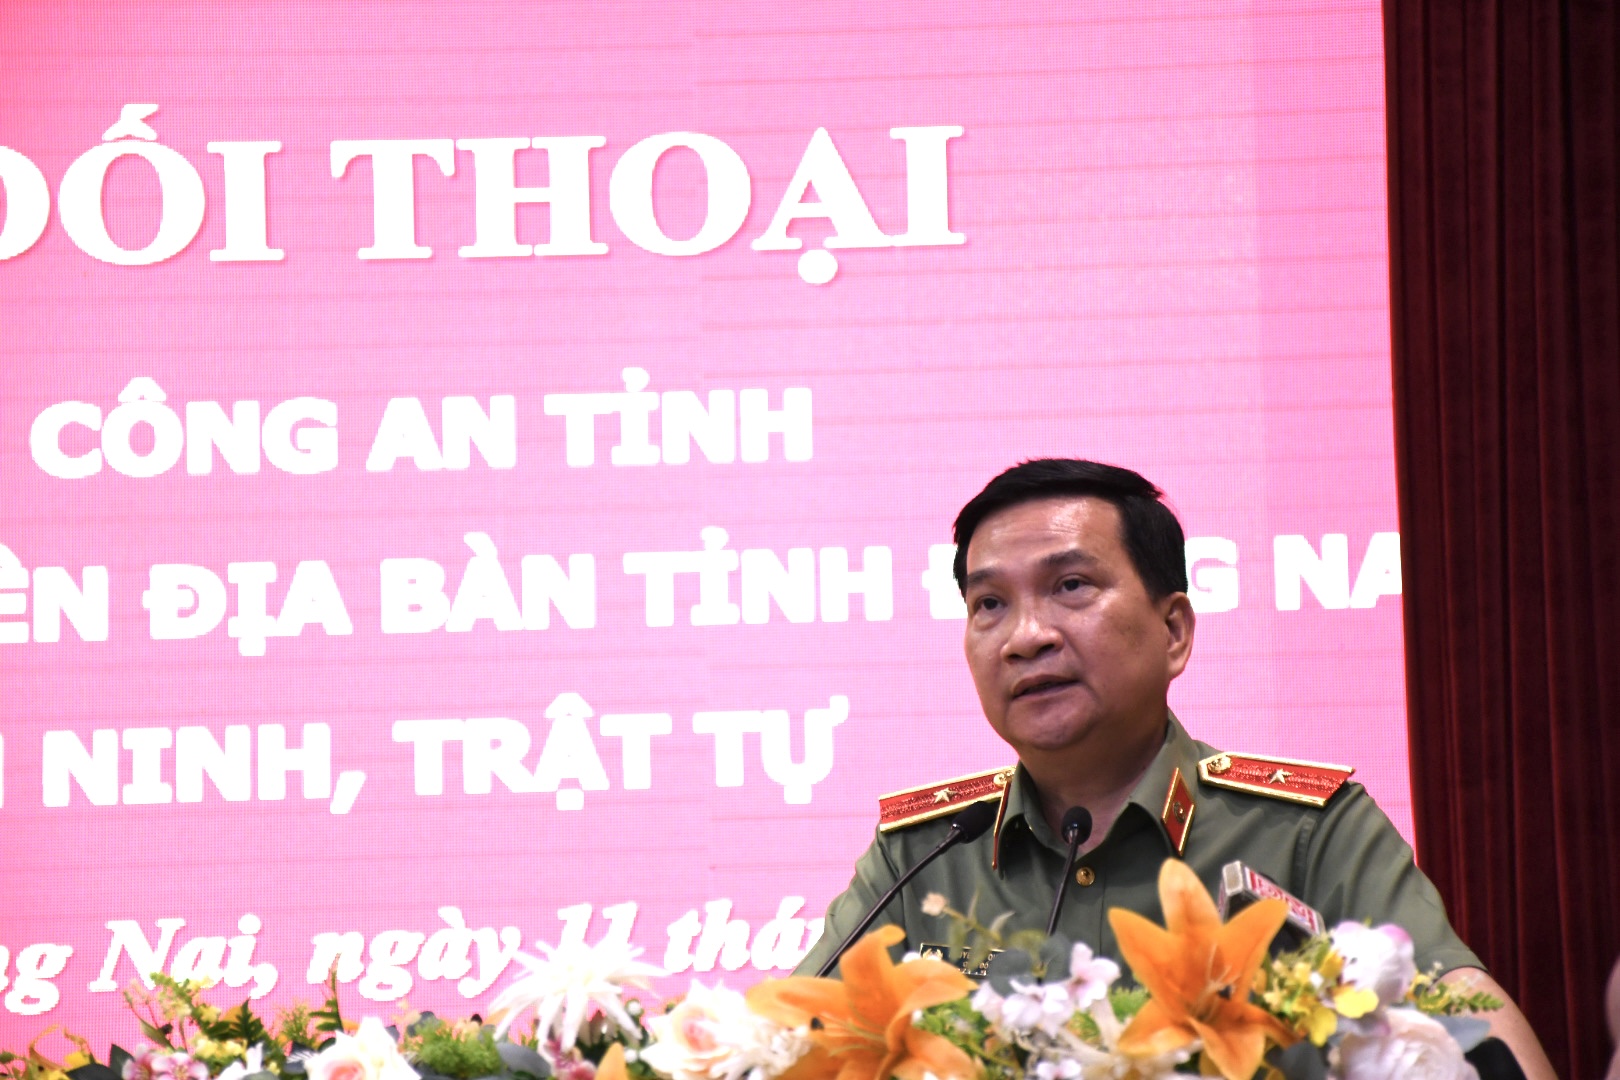 Thiếu tướng Nguyễn Sỹ Quang nói về tín dụng đen, vướng mắc trong PCCC ở Đồng Nai - Ảnh 2.